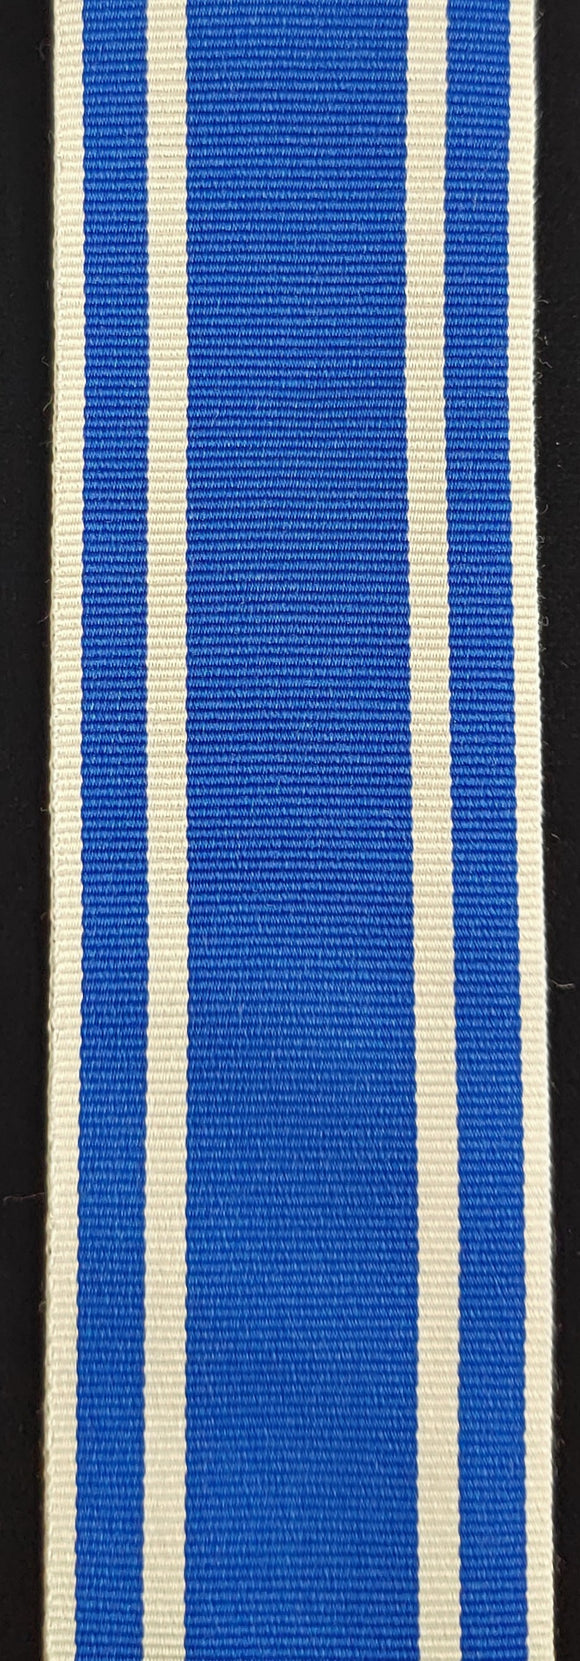 Ribbon, NATO Medal, Macedonia